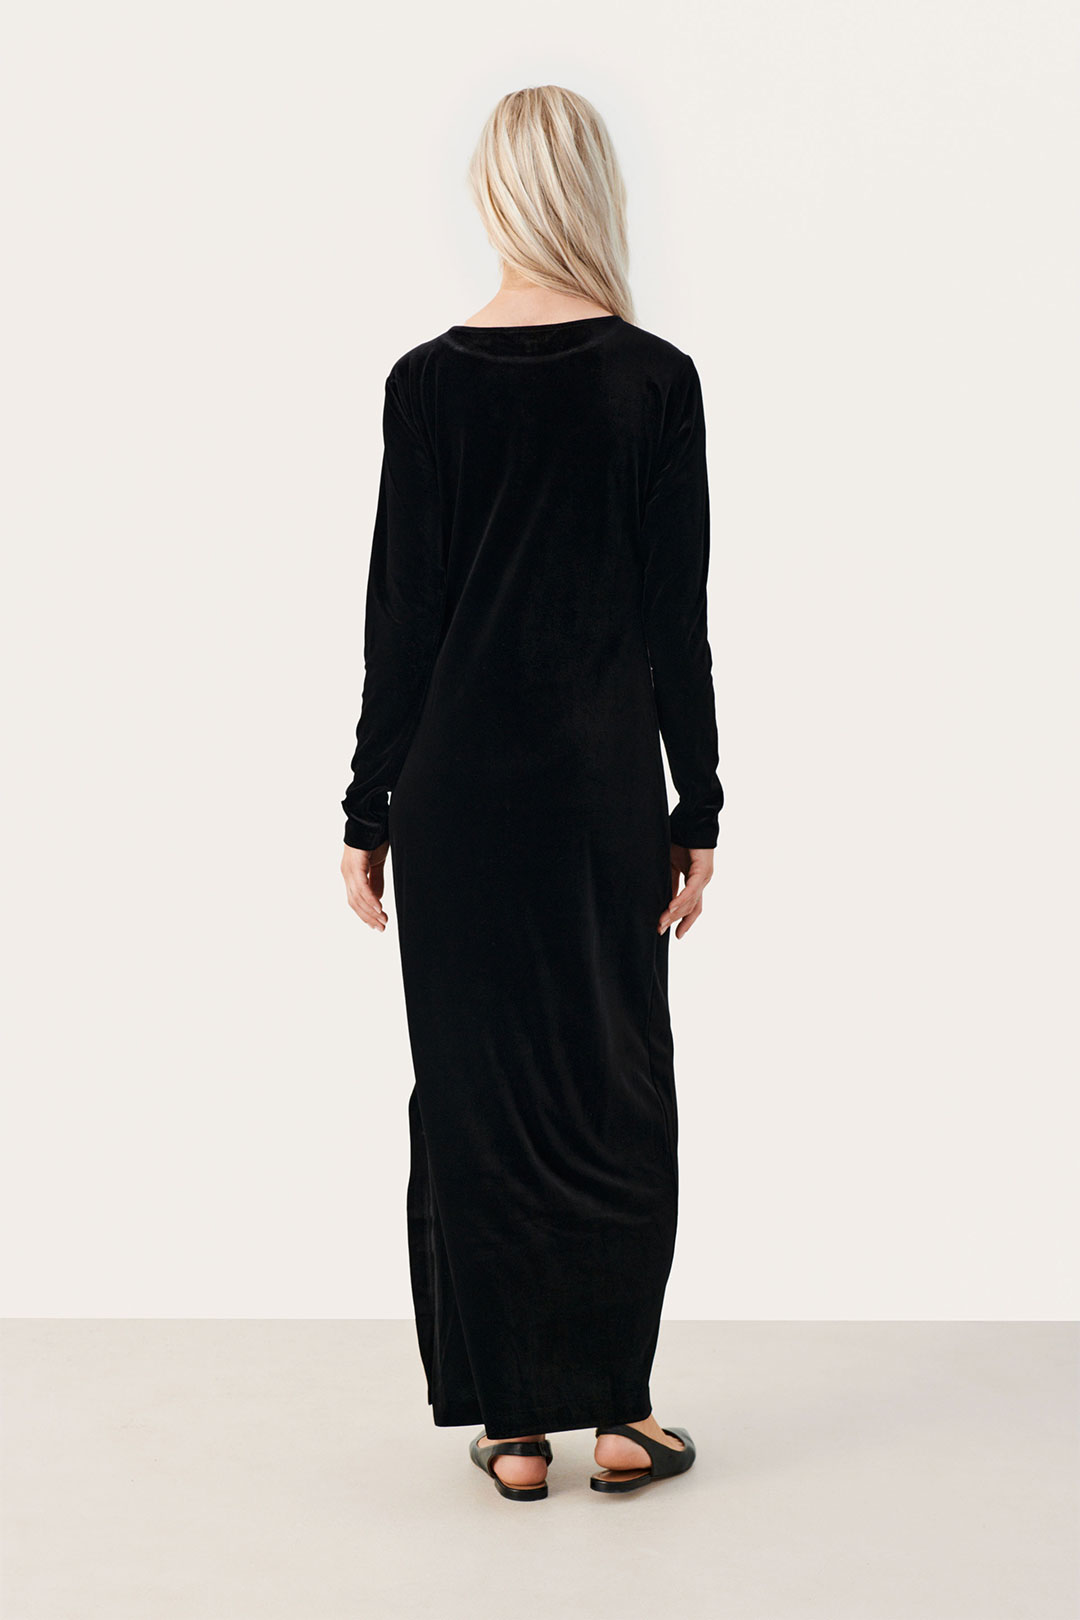 Skulpterende, takkete kjole – Nivå 3 for 250KR - Shapewear